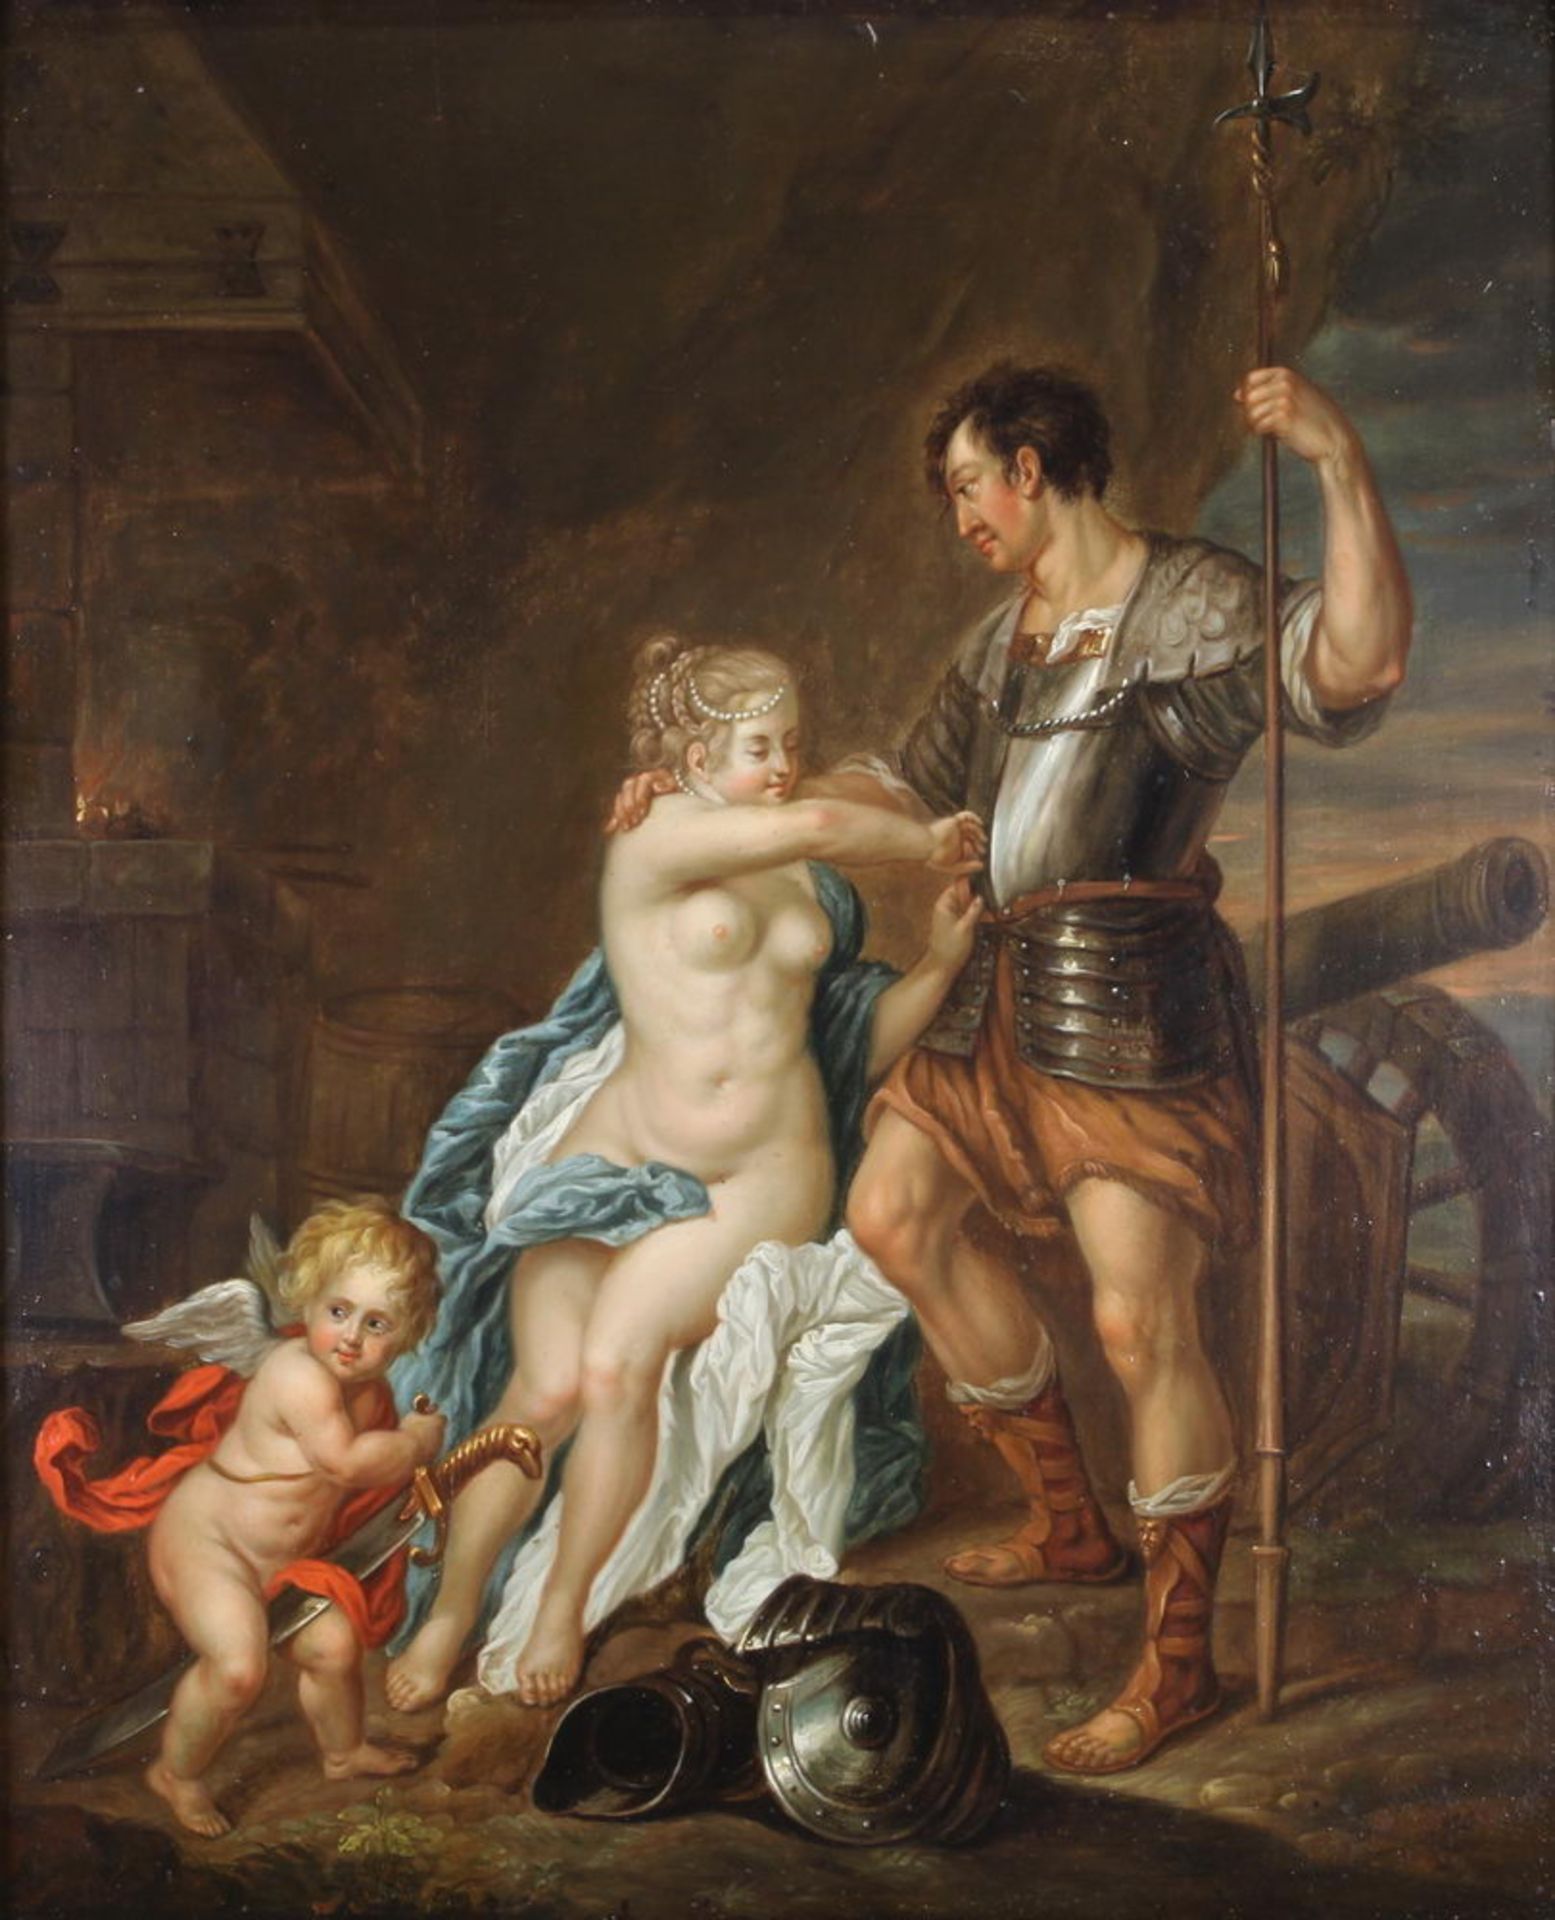 Werff, Adriaen van der (1659 Karlinger-Ambacht - 1722 Rotterdam), nach, "Venus, Mars und Amor in de